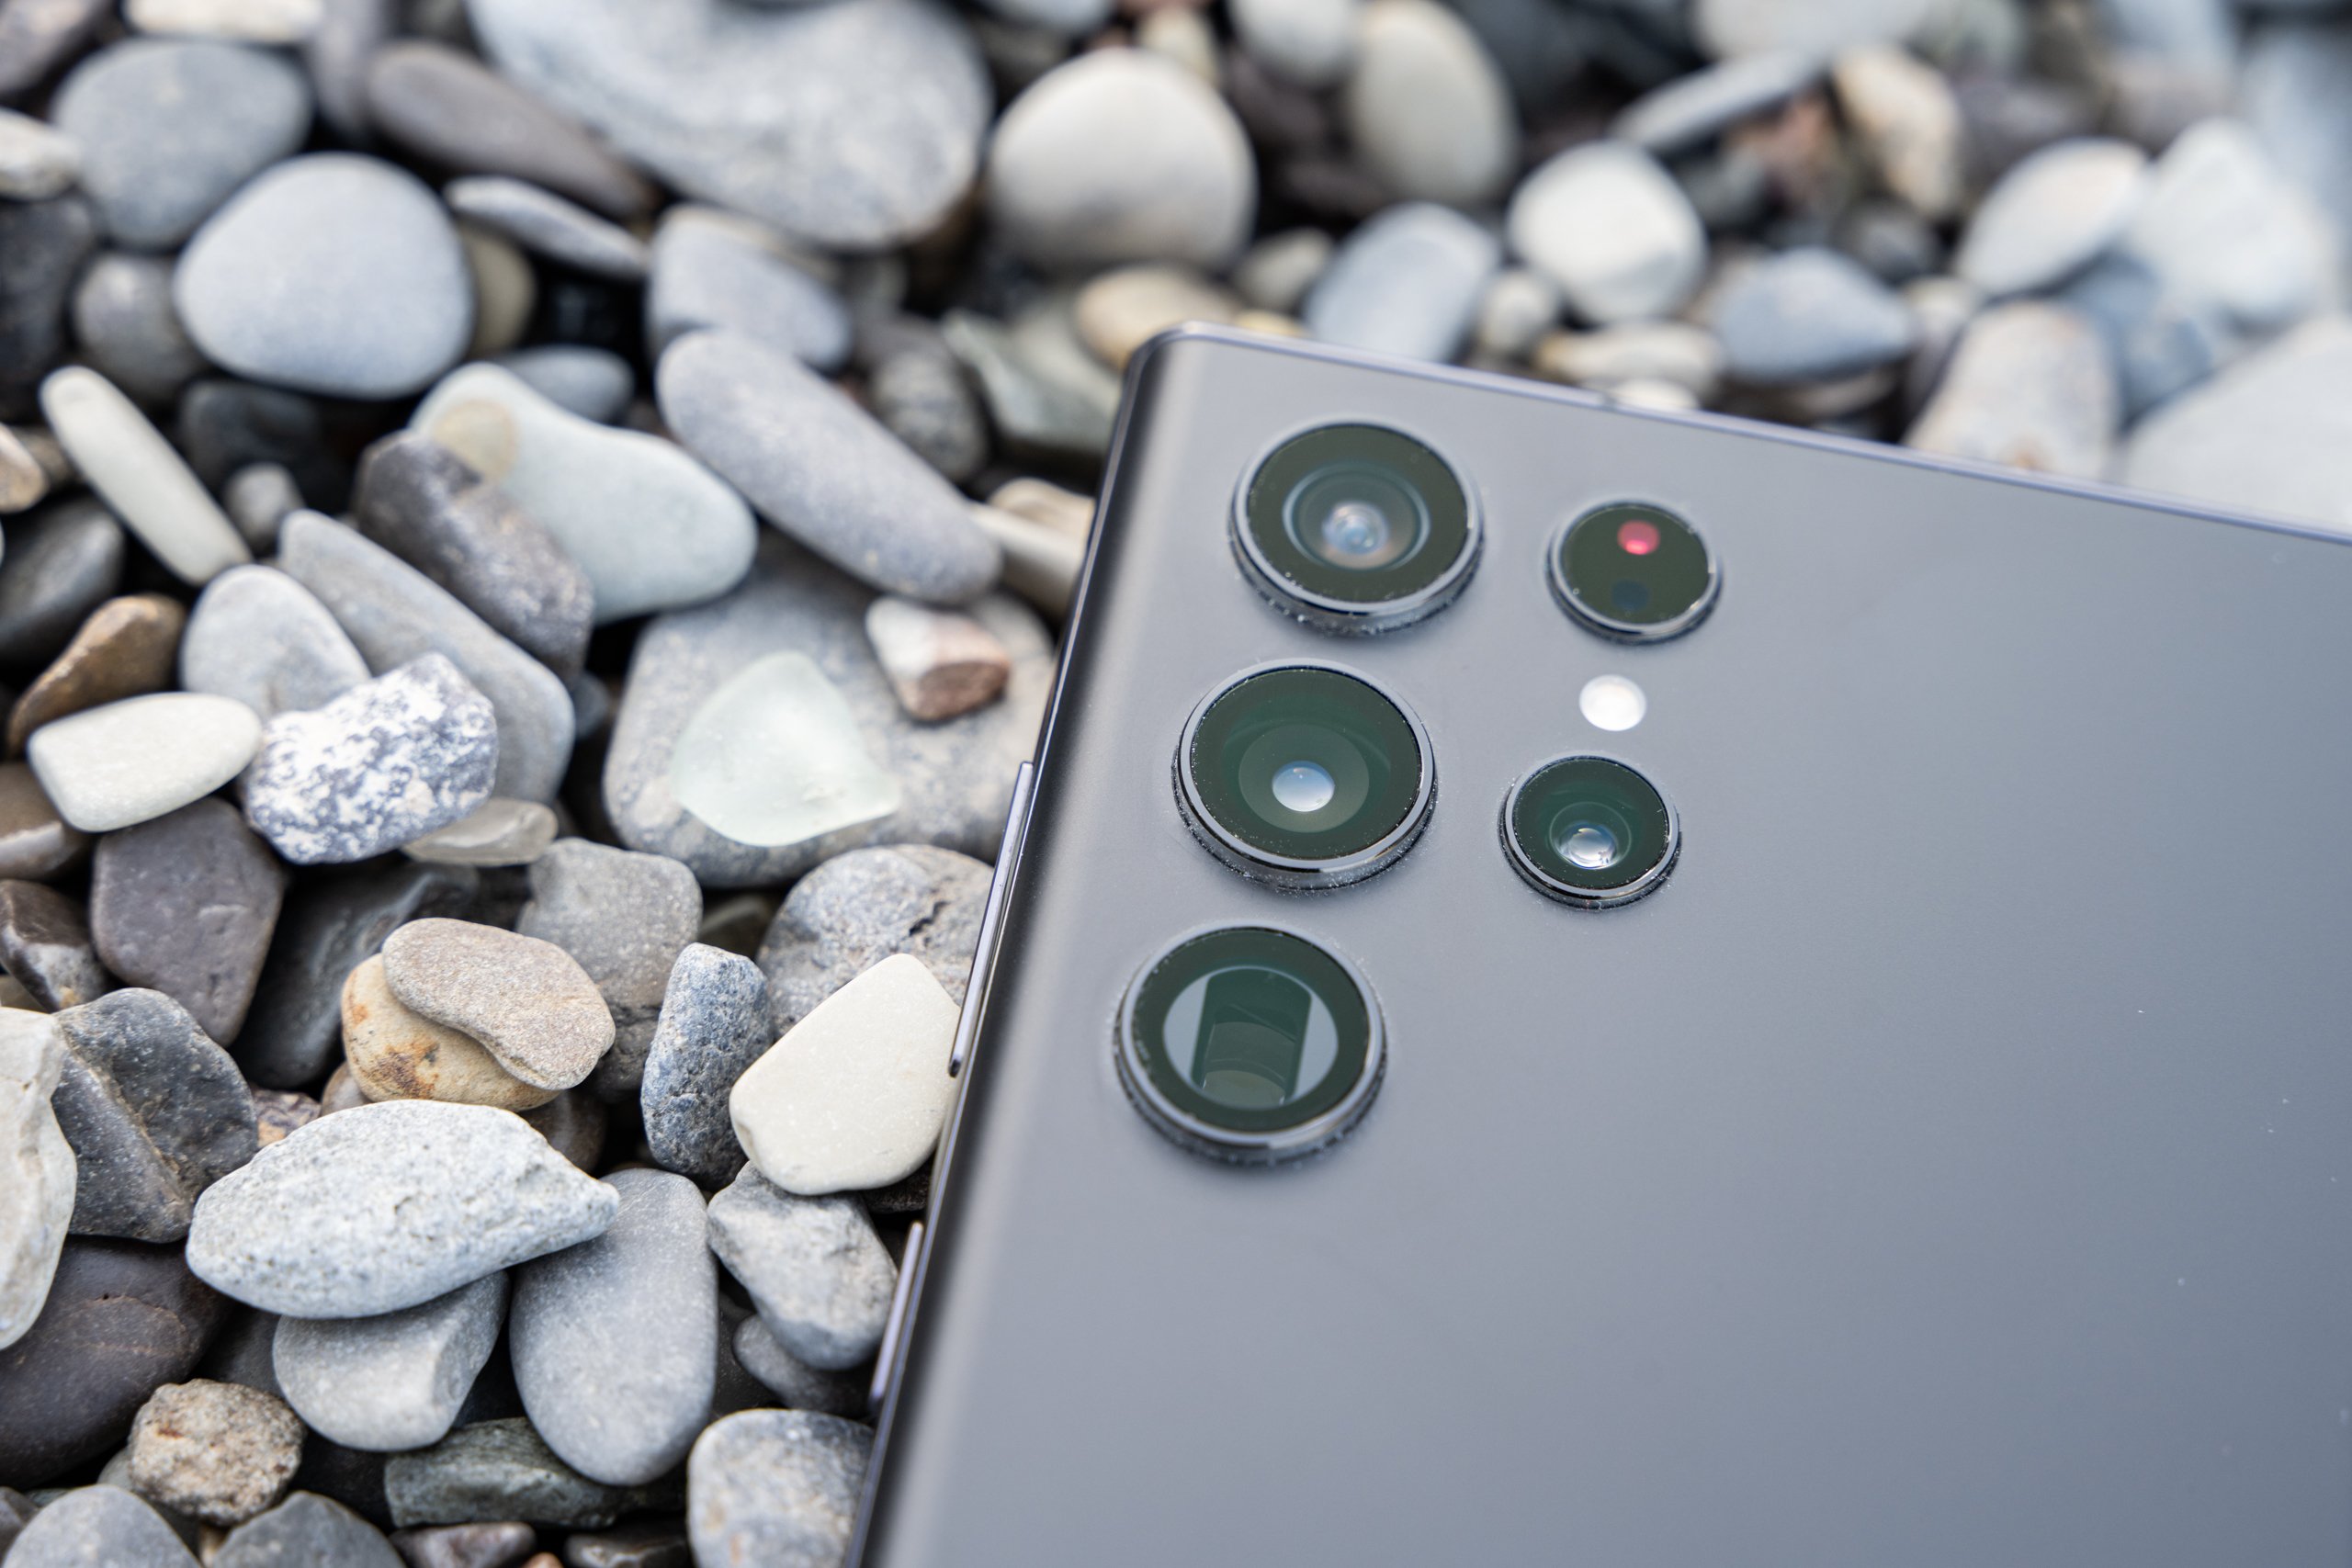 Hãy xem đánh giá về camera của Samsung Galaxy S22 Ultra, thiết bị sẽ đem đến cho bạn những hình ảnh chất lượng tốt nhất với độ phân giải cao và khả năng zoom tuyệt vời.